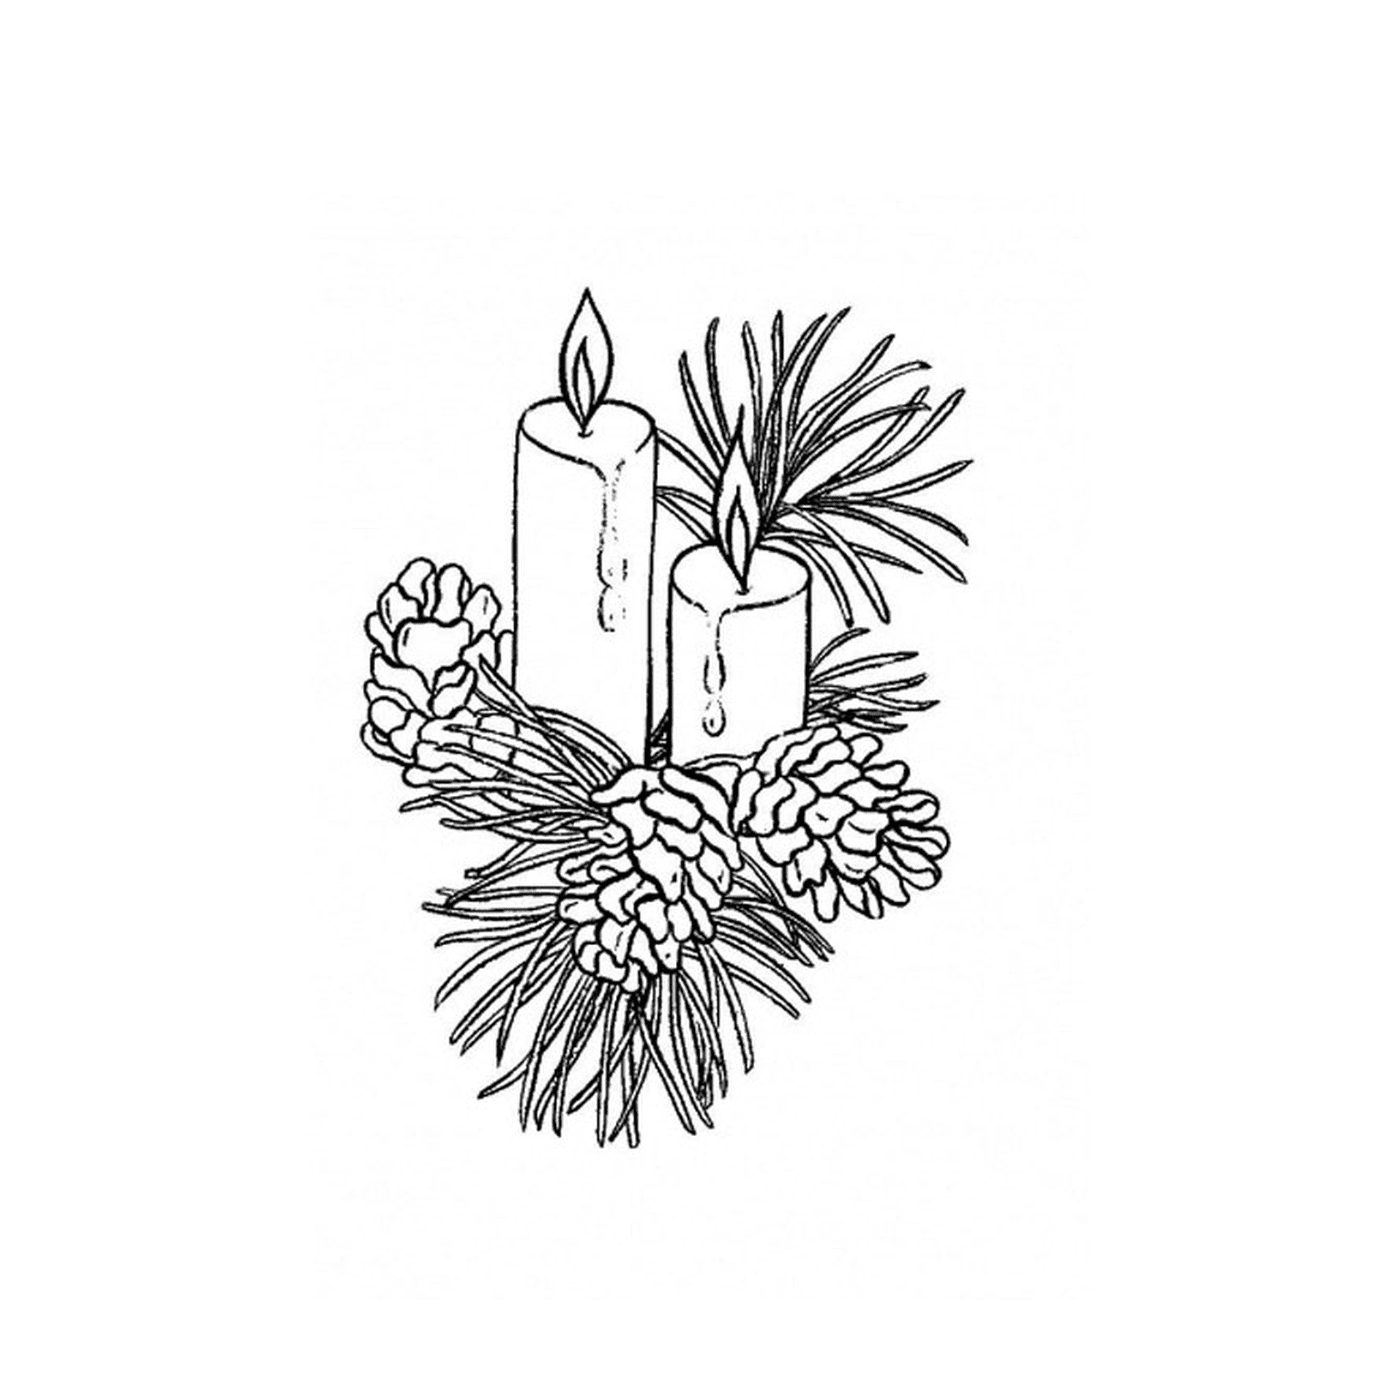  Dos velas encendidas sobre una rama de pino 